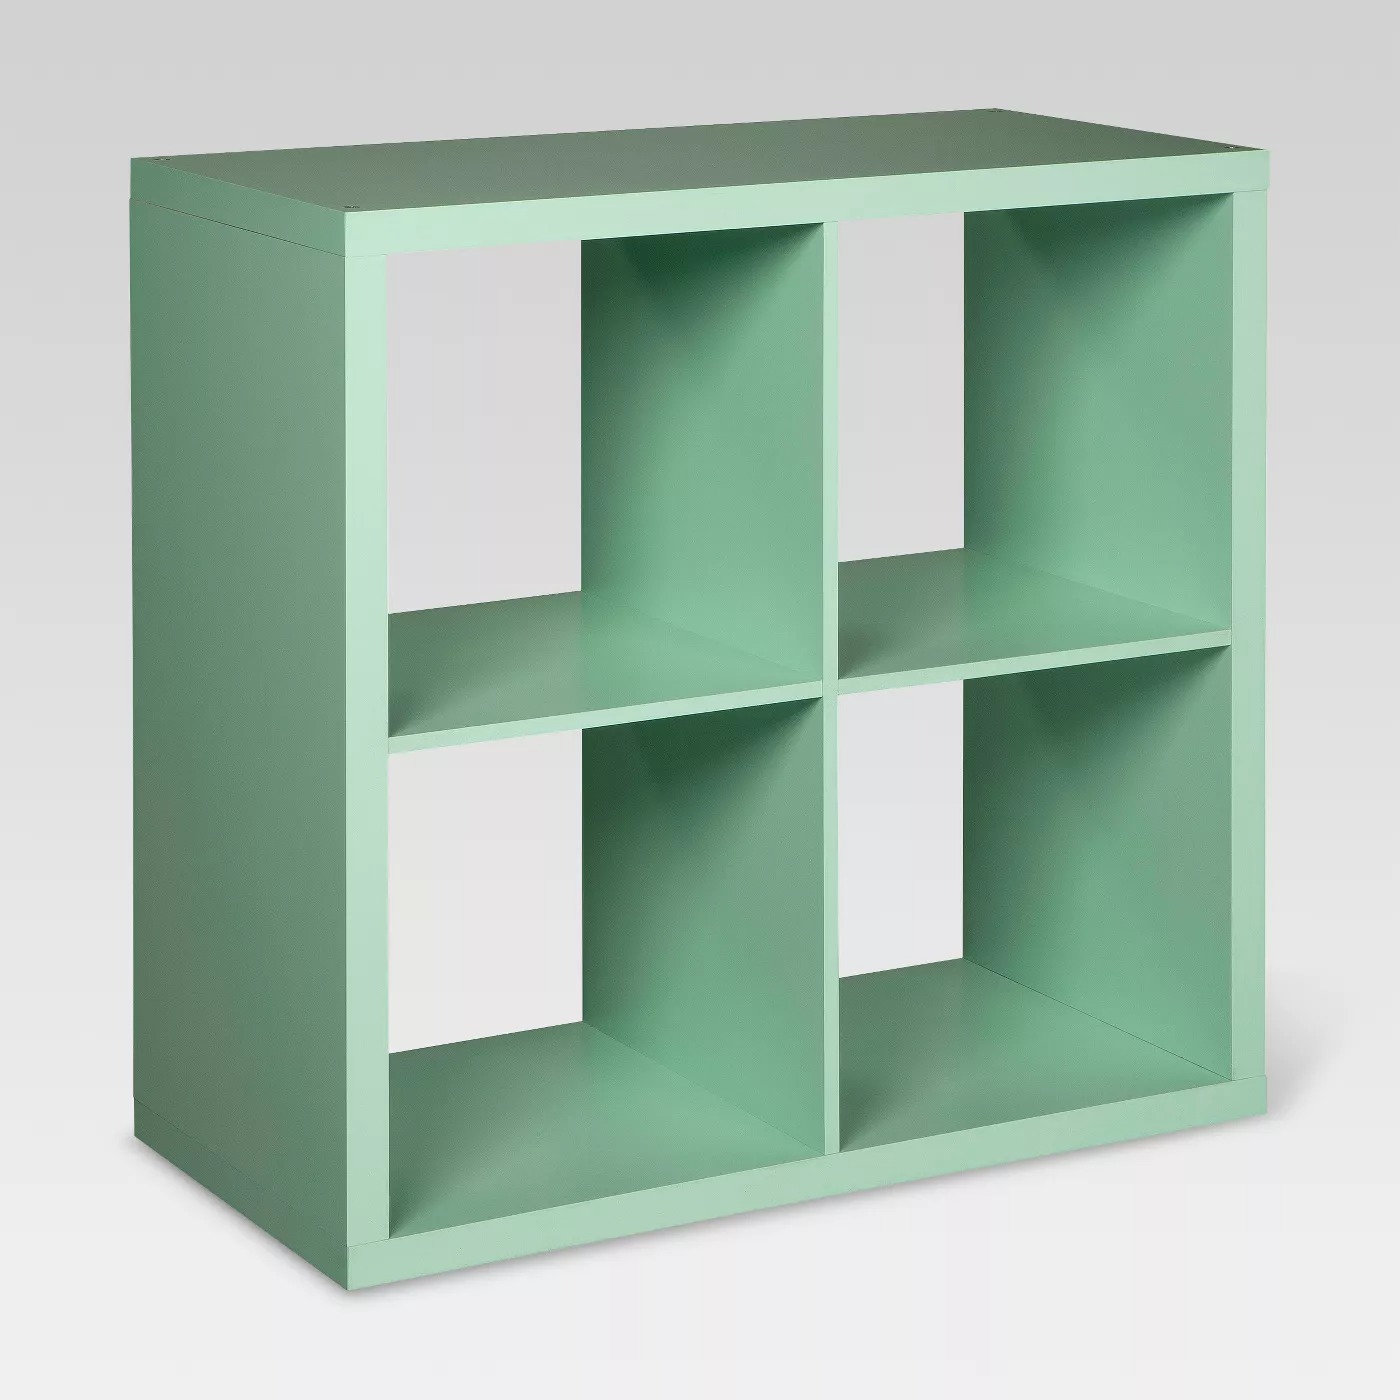 Threshold 4 Cube Organizer Shelf (Mint, 30 H x 29.84 W x 14.57" D) $27.50 + 2.5% Slickdeals Cashback (PC Req'd) + Free Pickup at Target or FS on $35